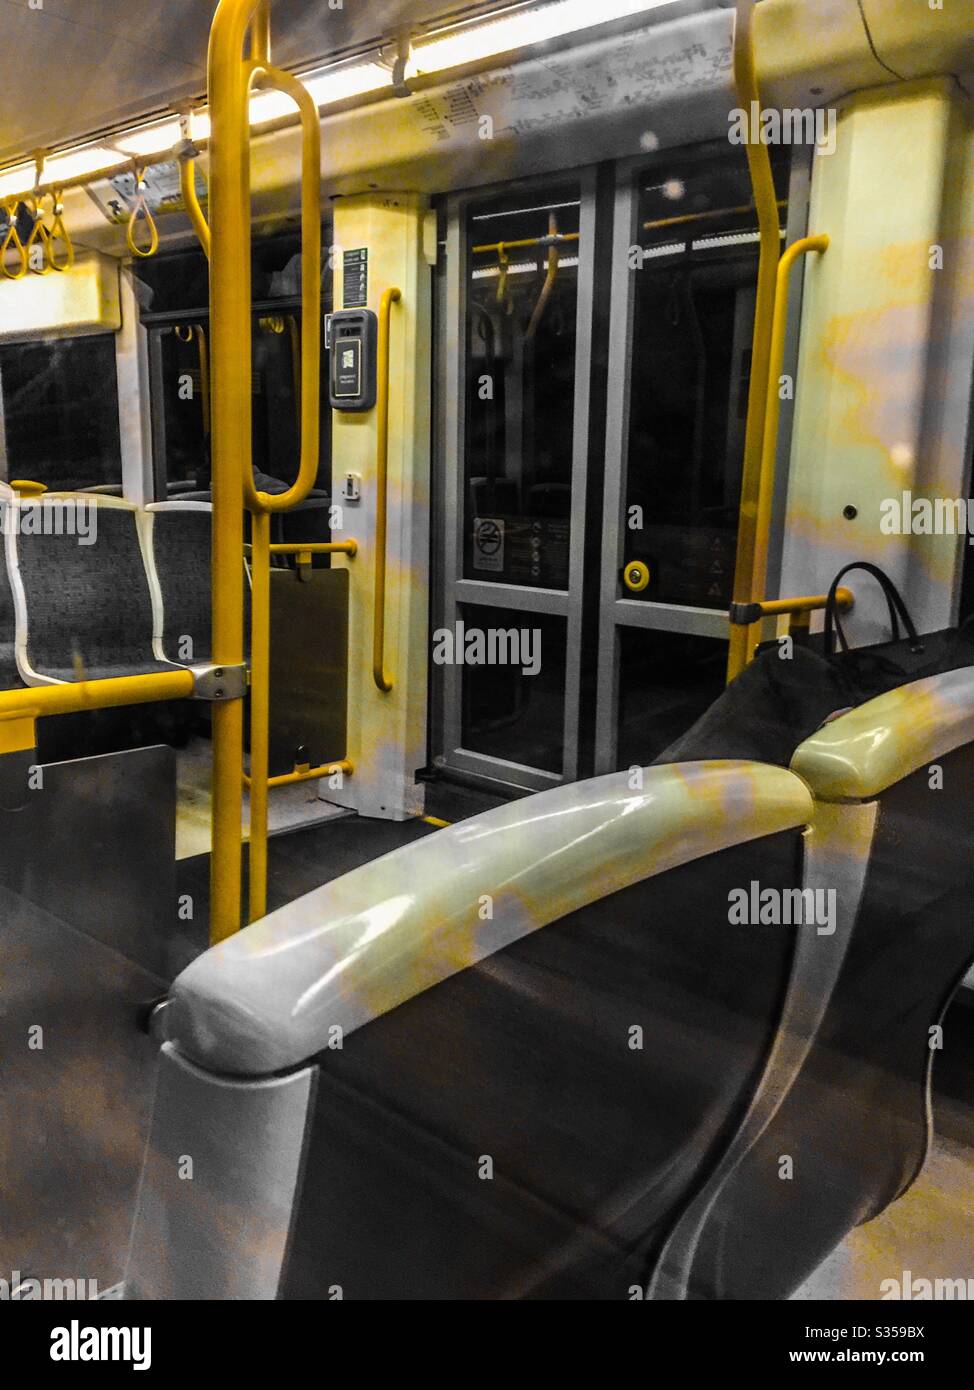 Chariot de métro vide Banque D'Images